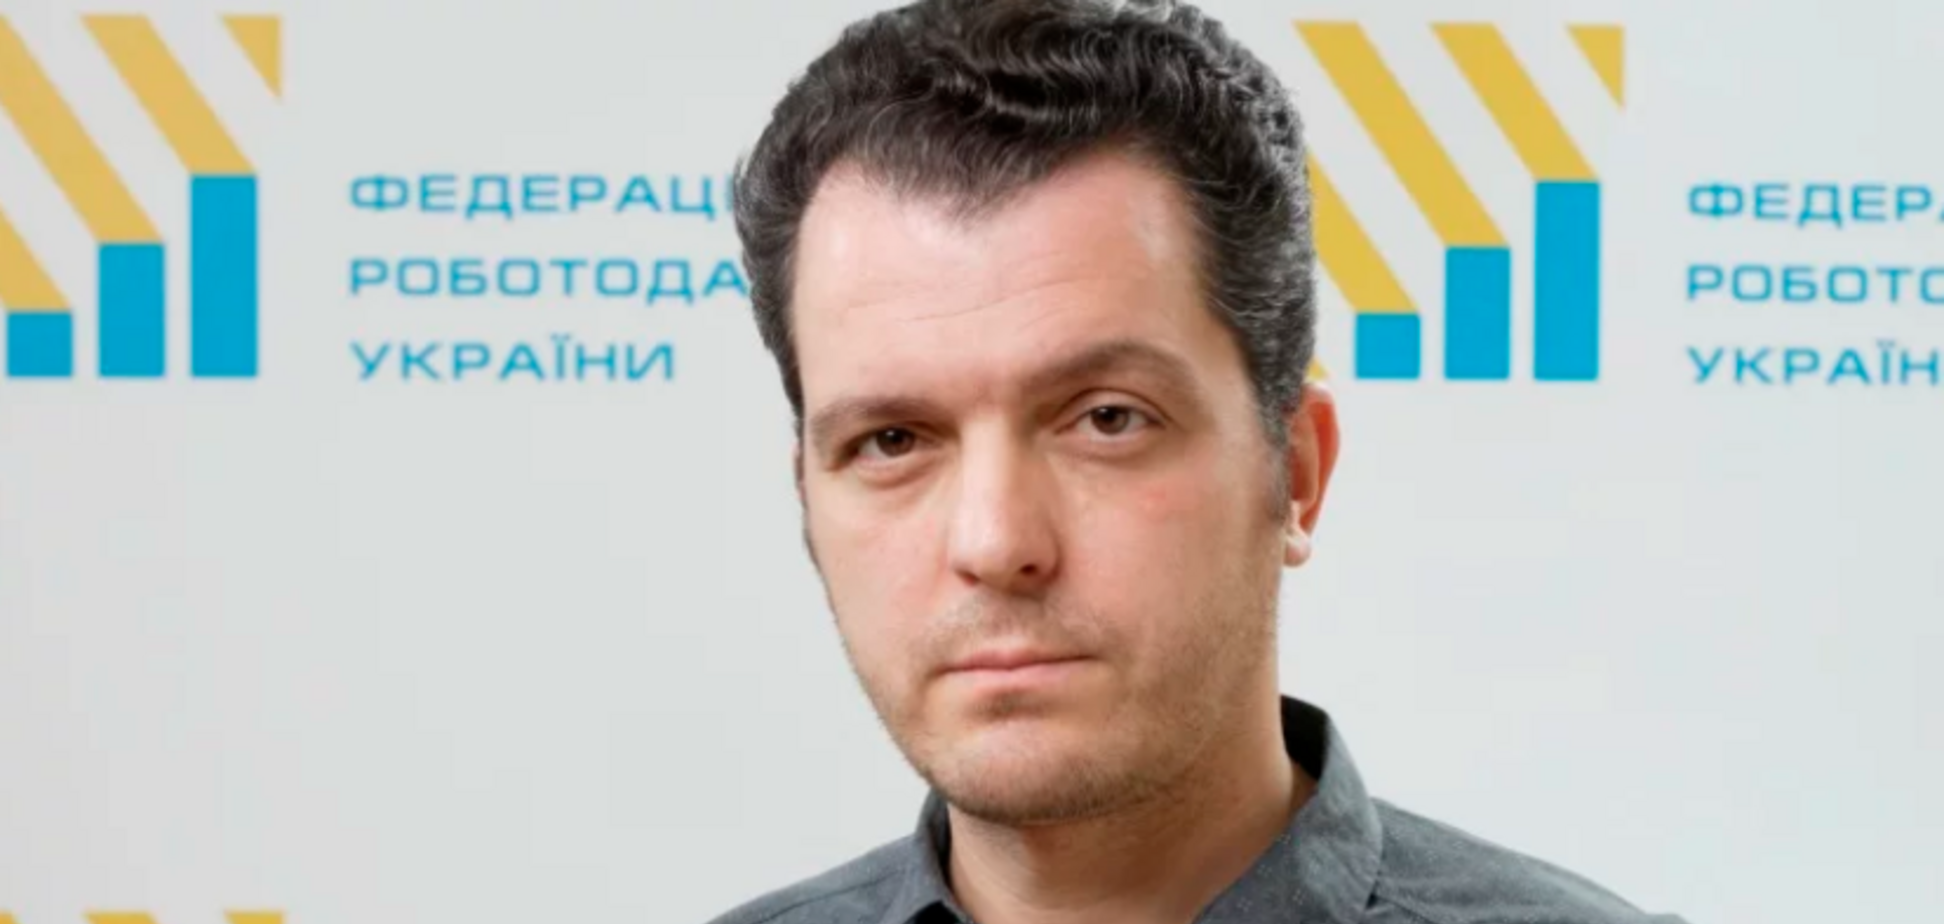 Ситуація з невиплатою ПДВ завдасть серйозного удару по економіці - Федерація роботодавців України